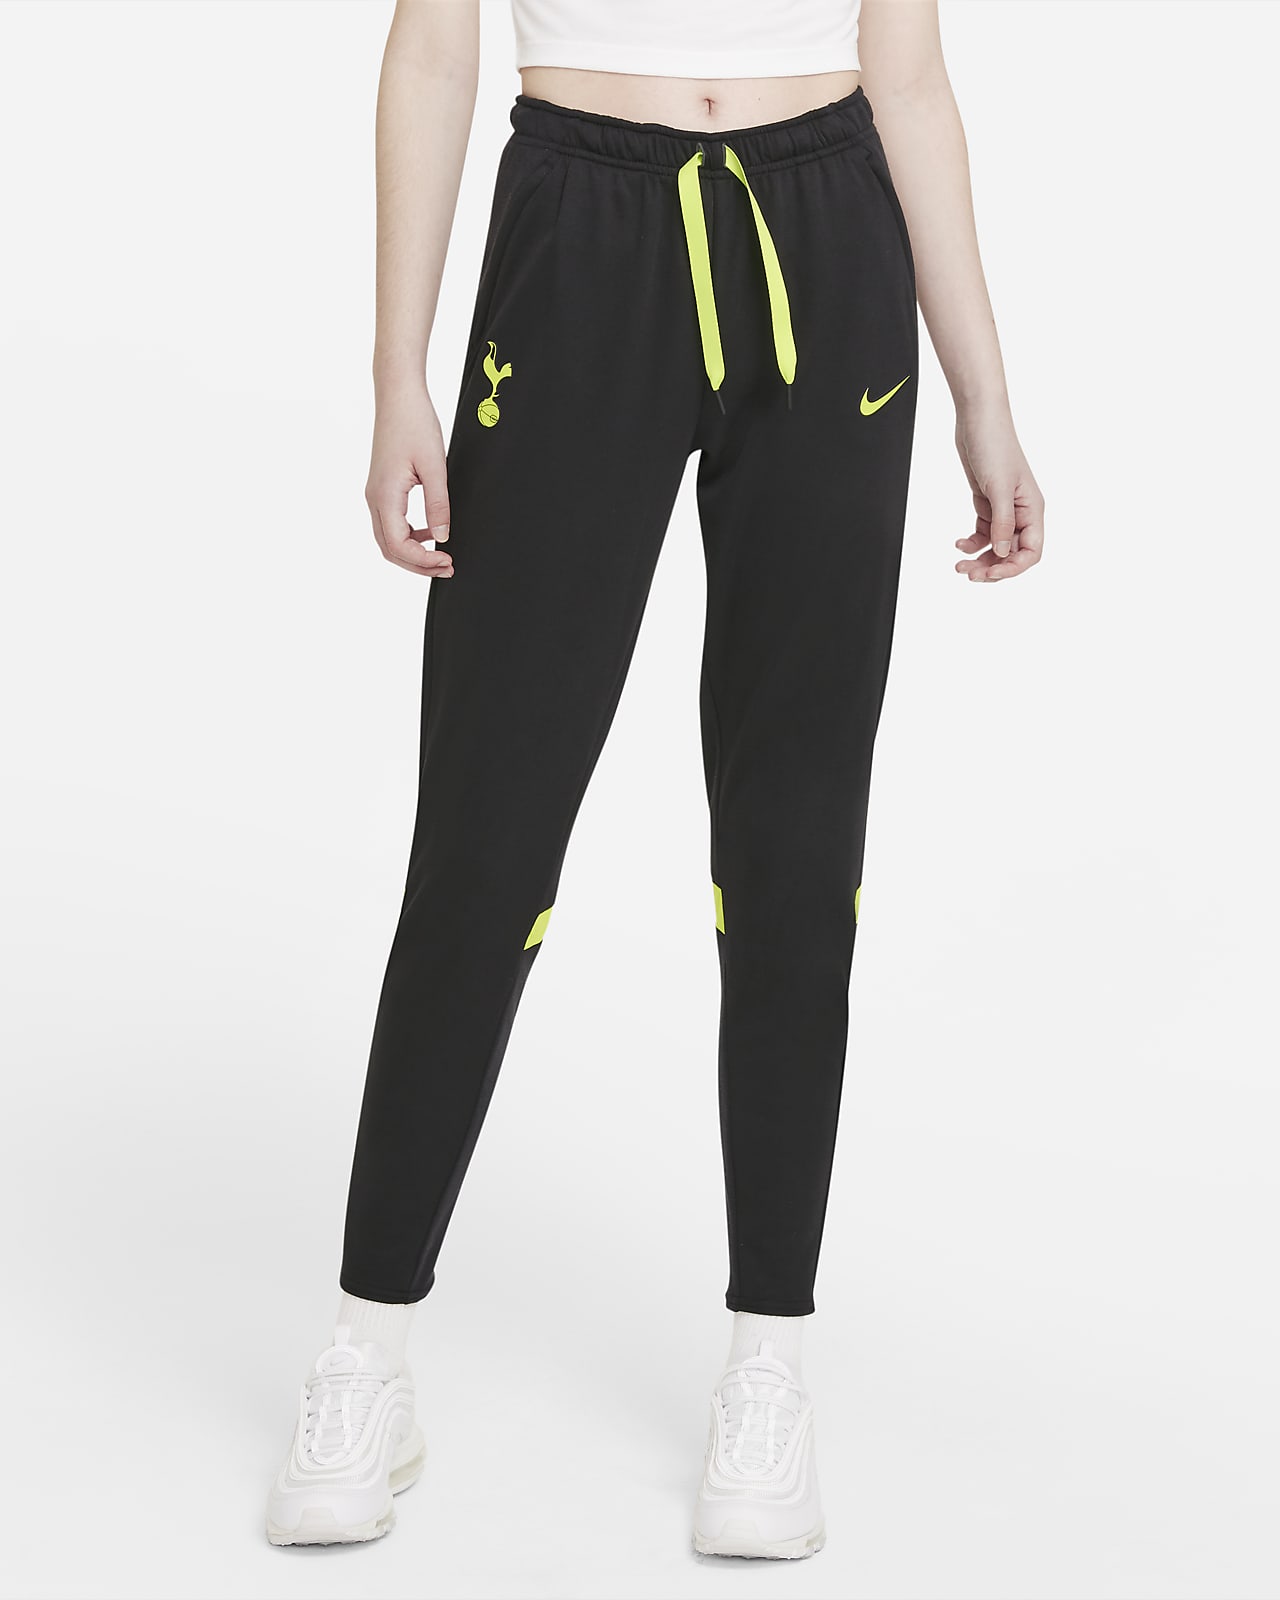 Tottenham Hotspur Women's Nike Dri-FIT Fleece Football Pants. Nike BE